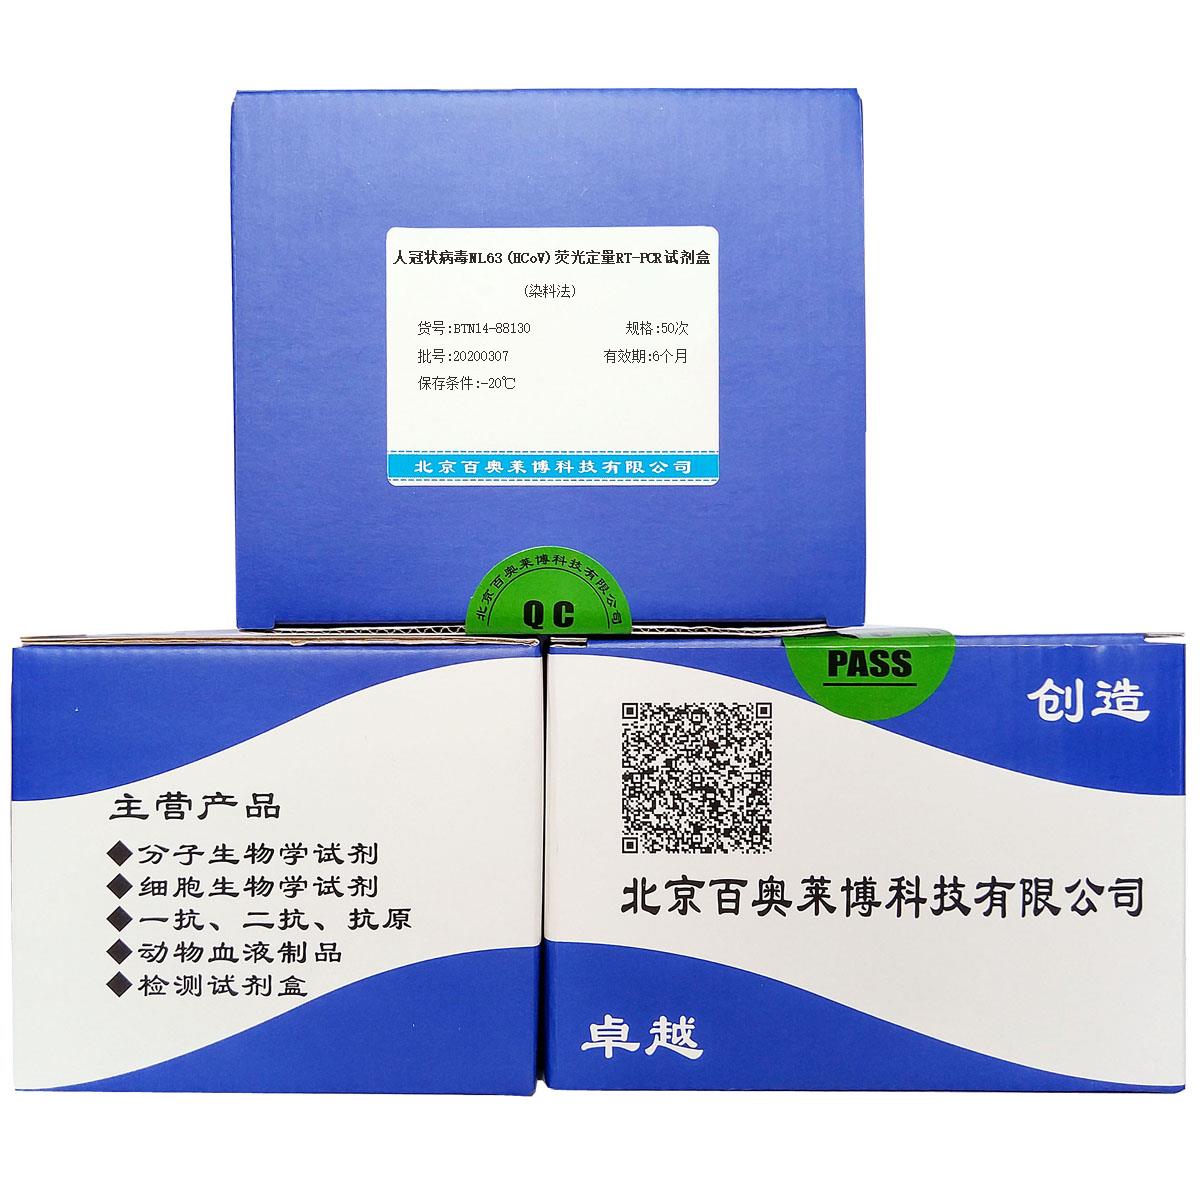 人冠状病毒NL63 (HCoV)荧光定量RT-PCR试剂盒(染料法)